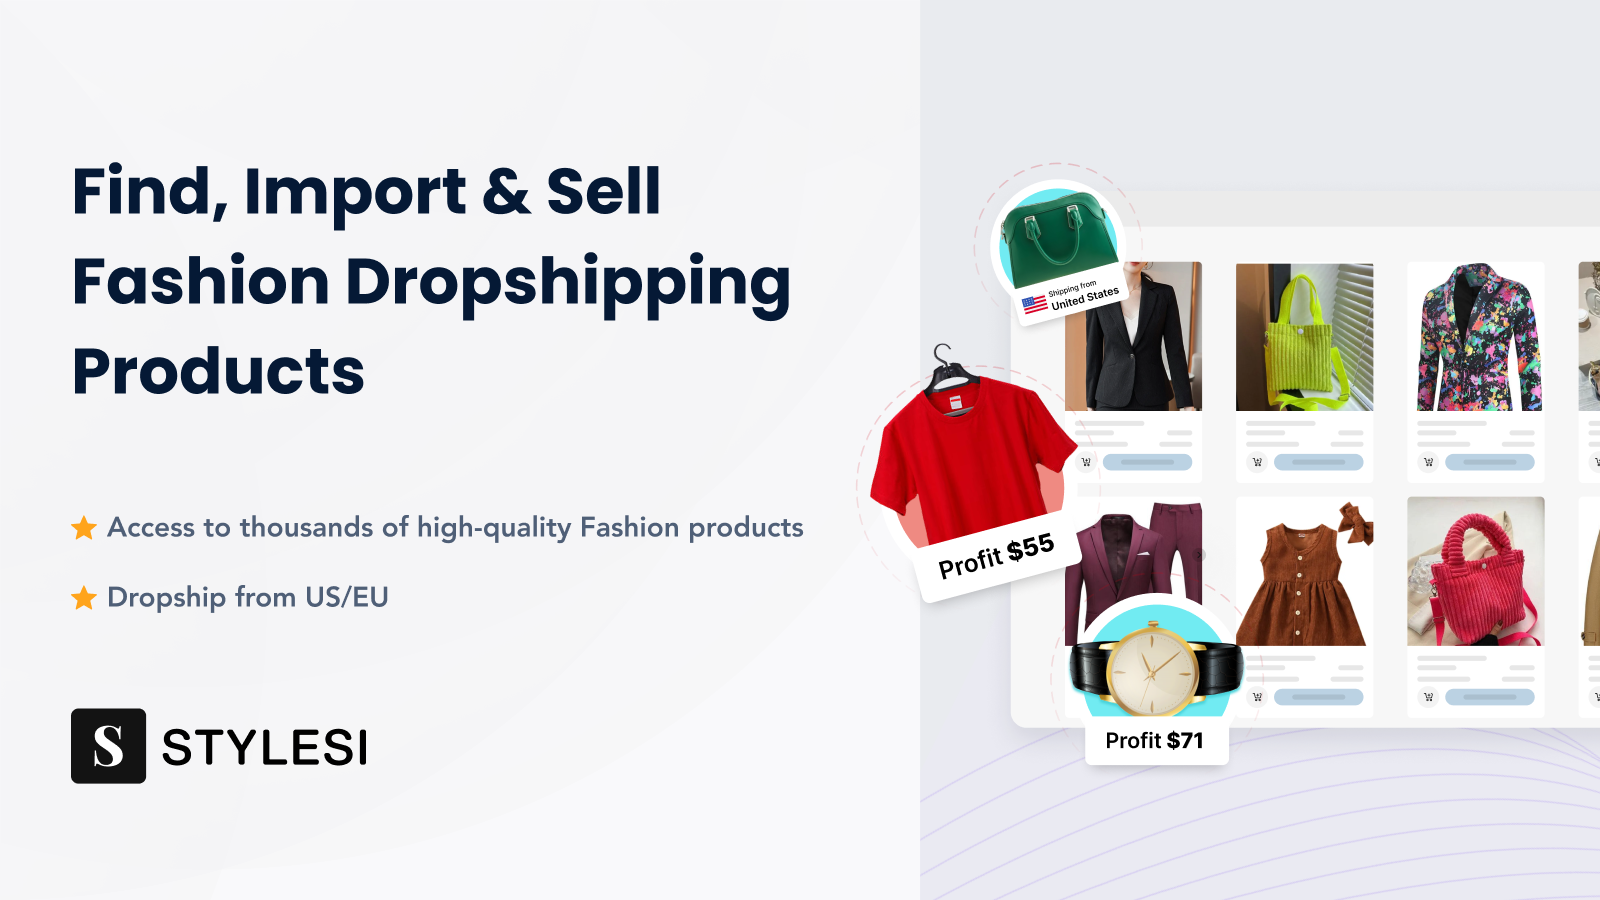 Finden, importieren & verkaufen Sie Mode-Dropshipping-Produkte